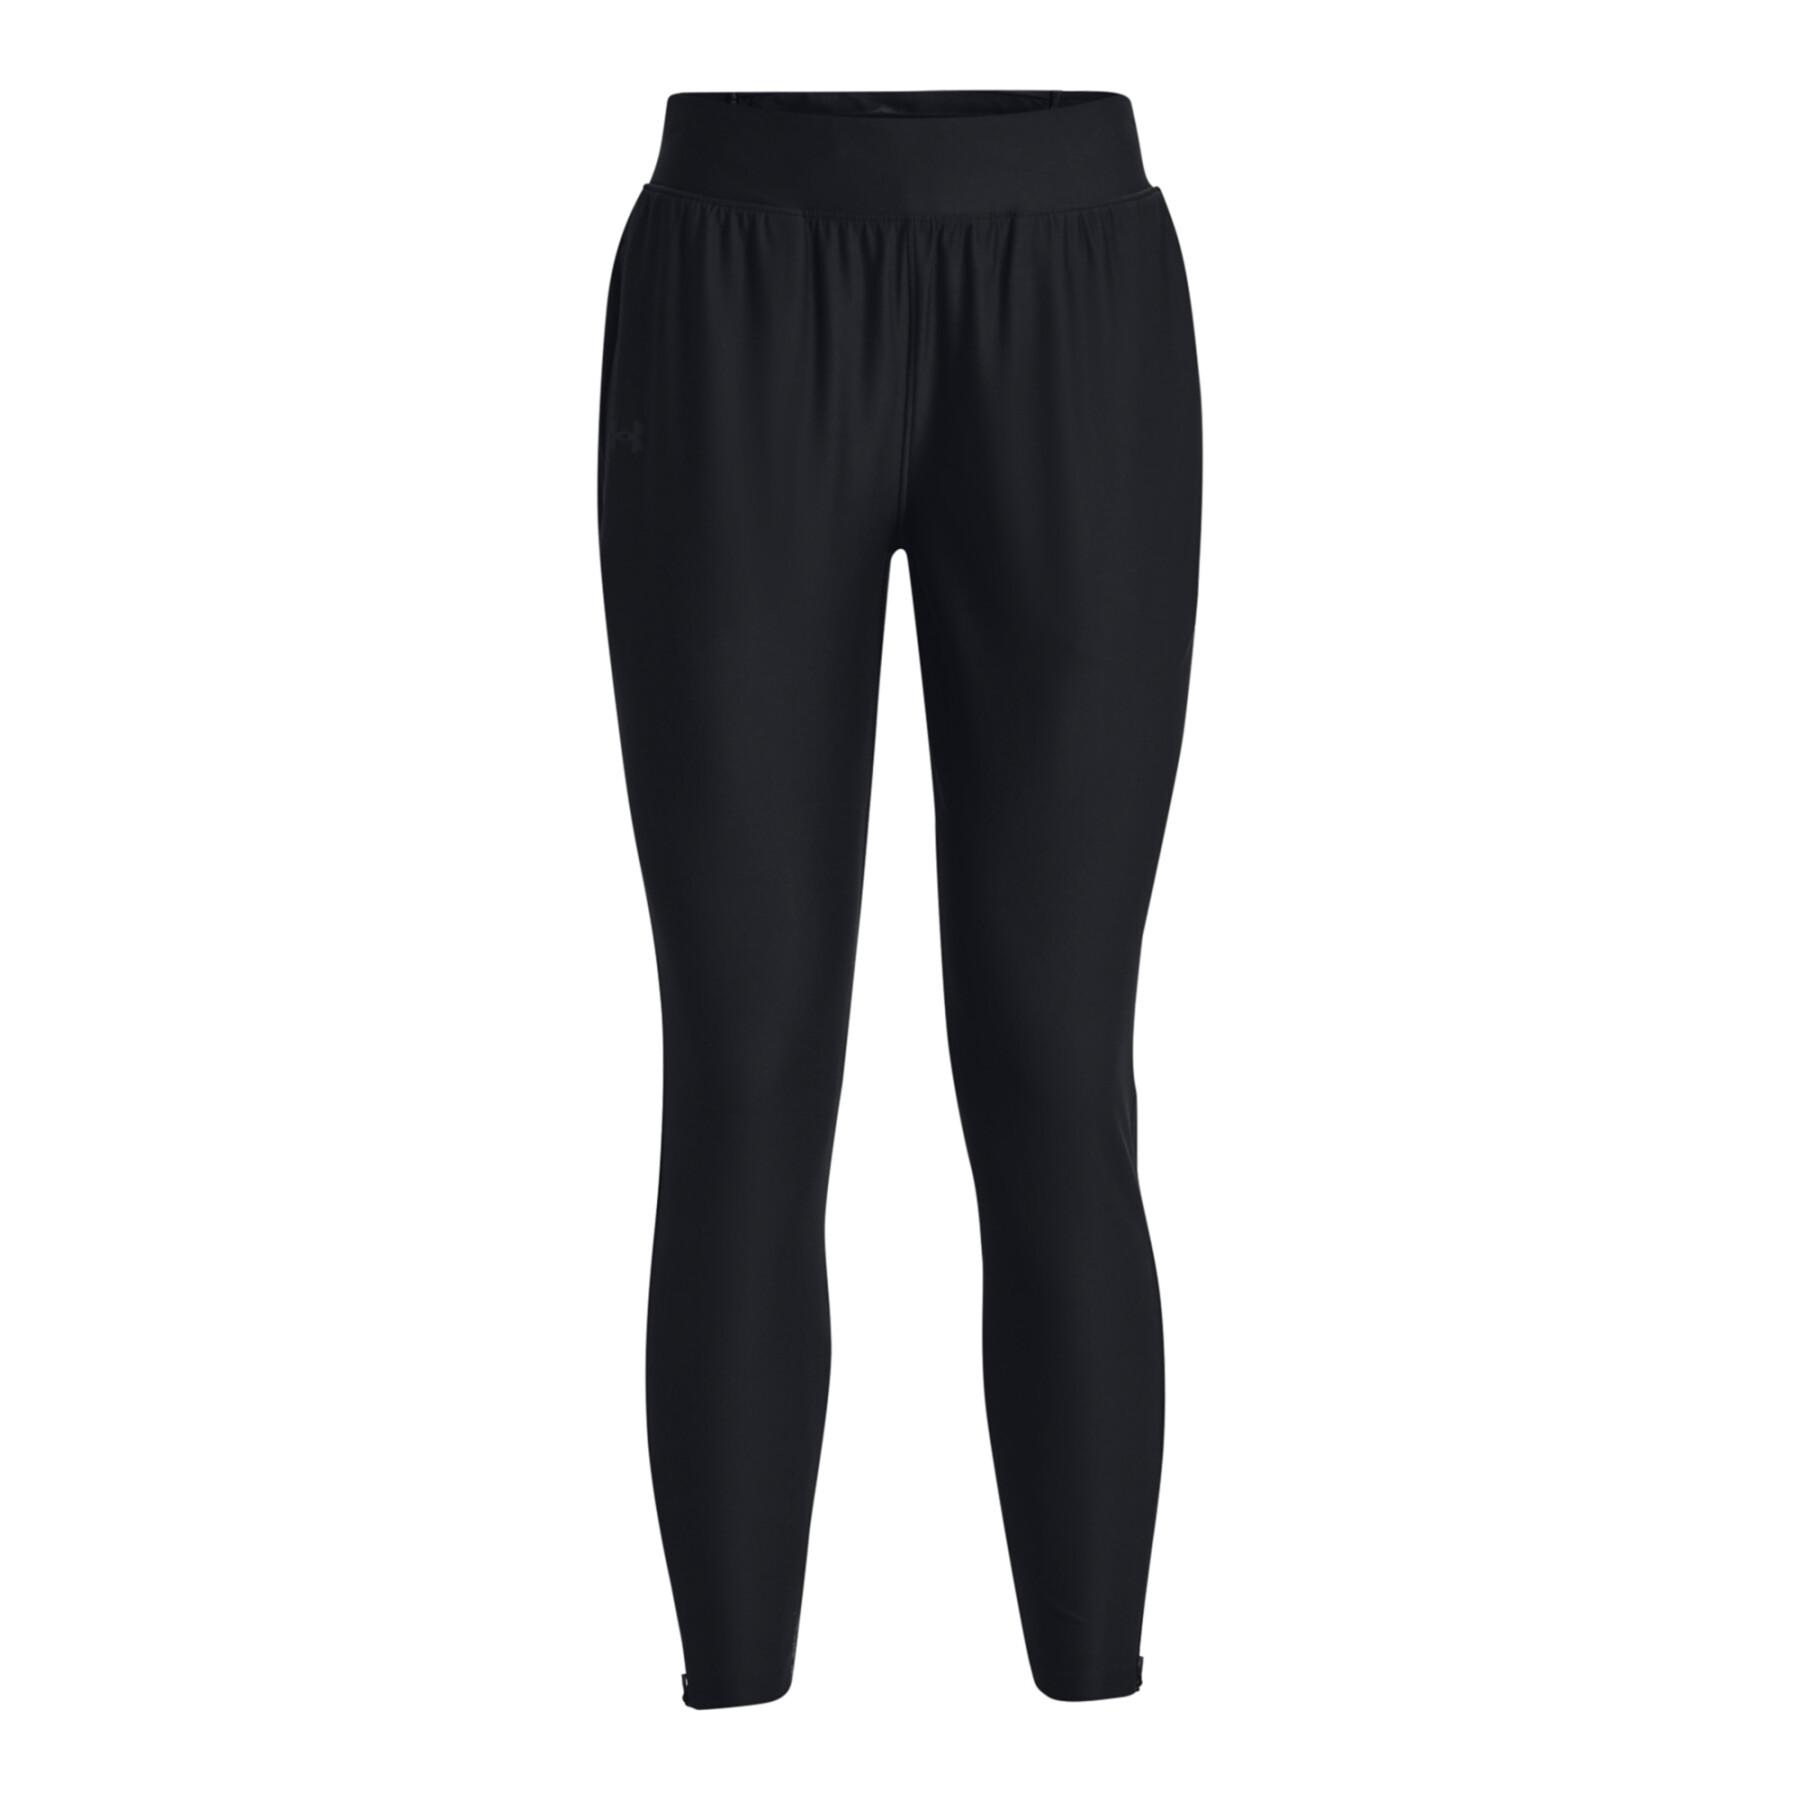 Women's jogging suit Under Armour Qualifier Elite - Pants / Jogging suits -  The Stockings - Womens Clothing